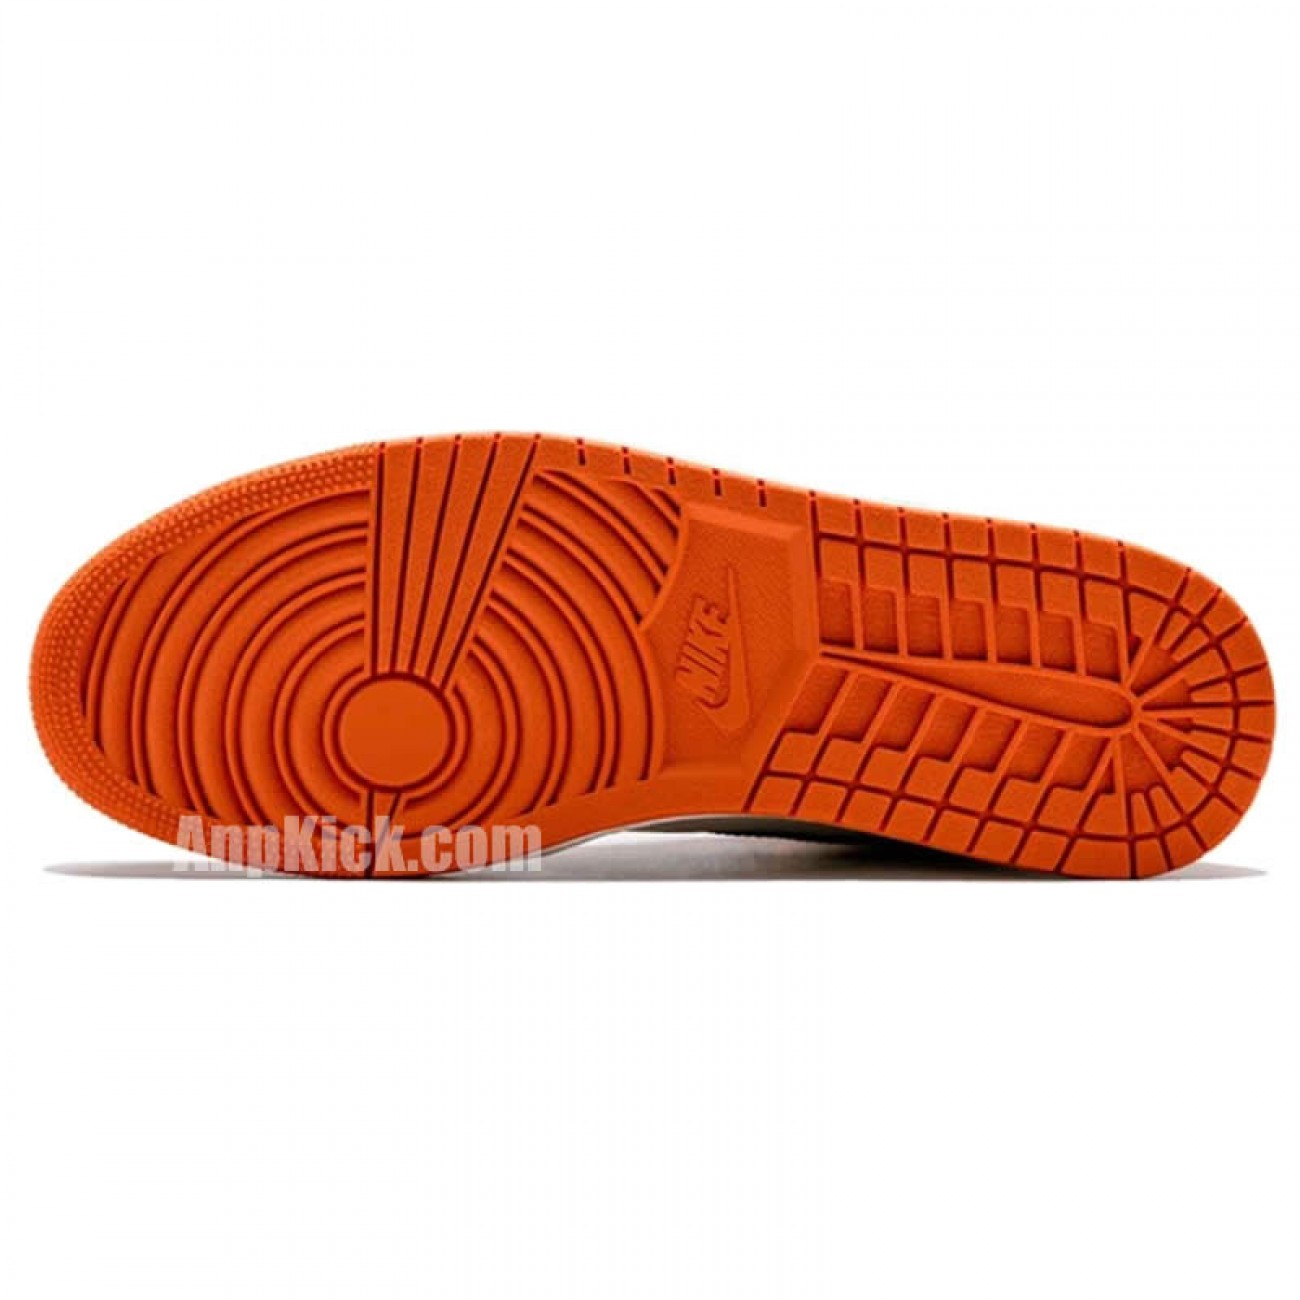 Air Jordan 1 Orange Retro High OG "Shattered Backboard Away" 555088-113